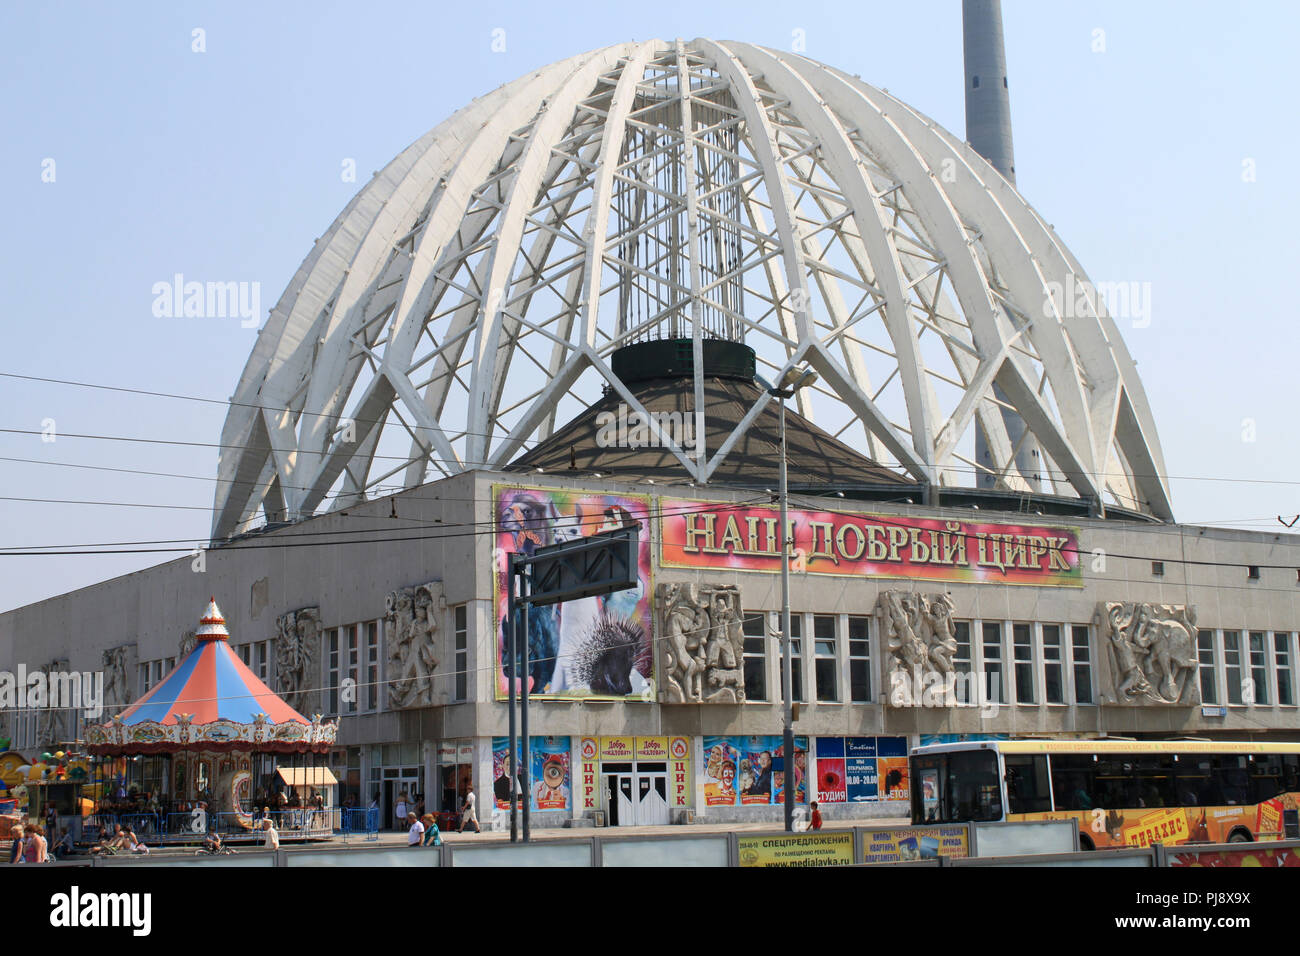 Yekaterinburg Circus, Yekaterinburg, Russia Stock Photo